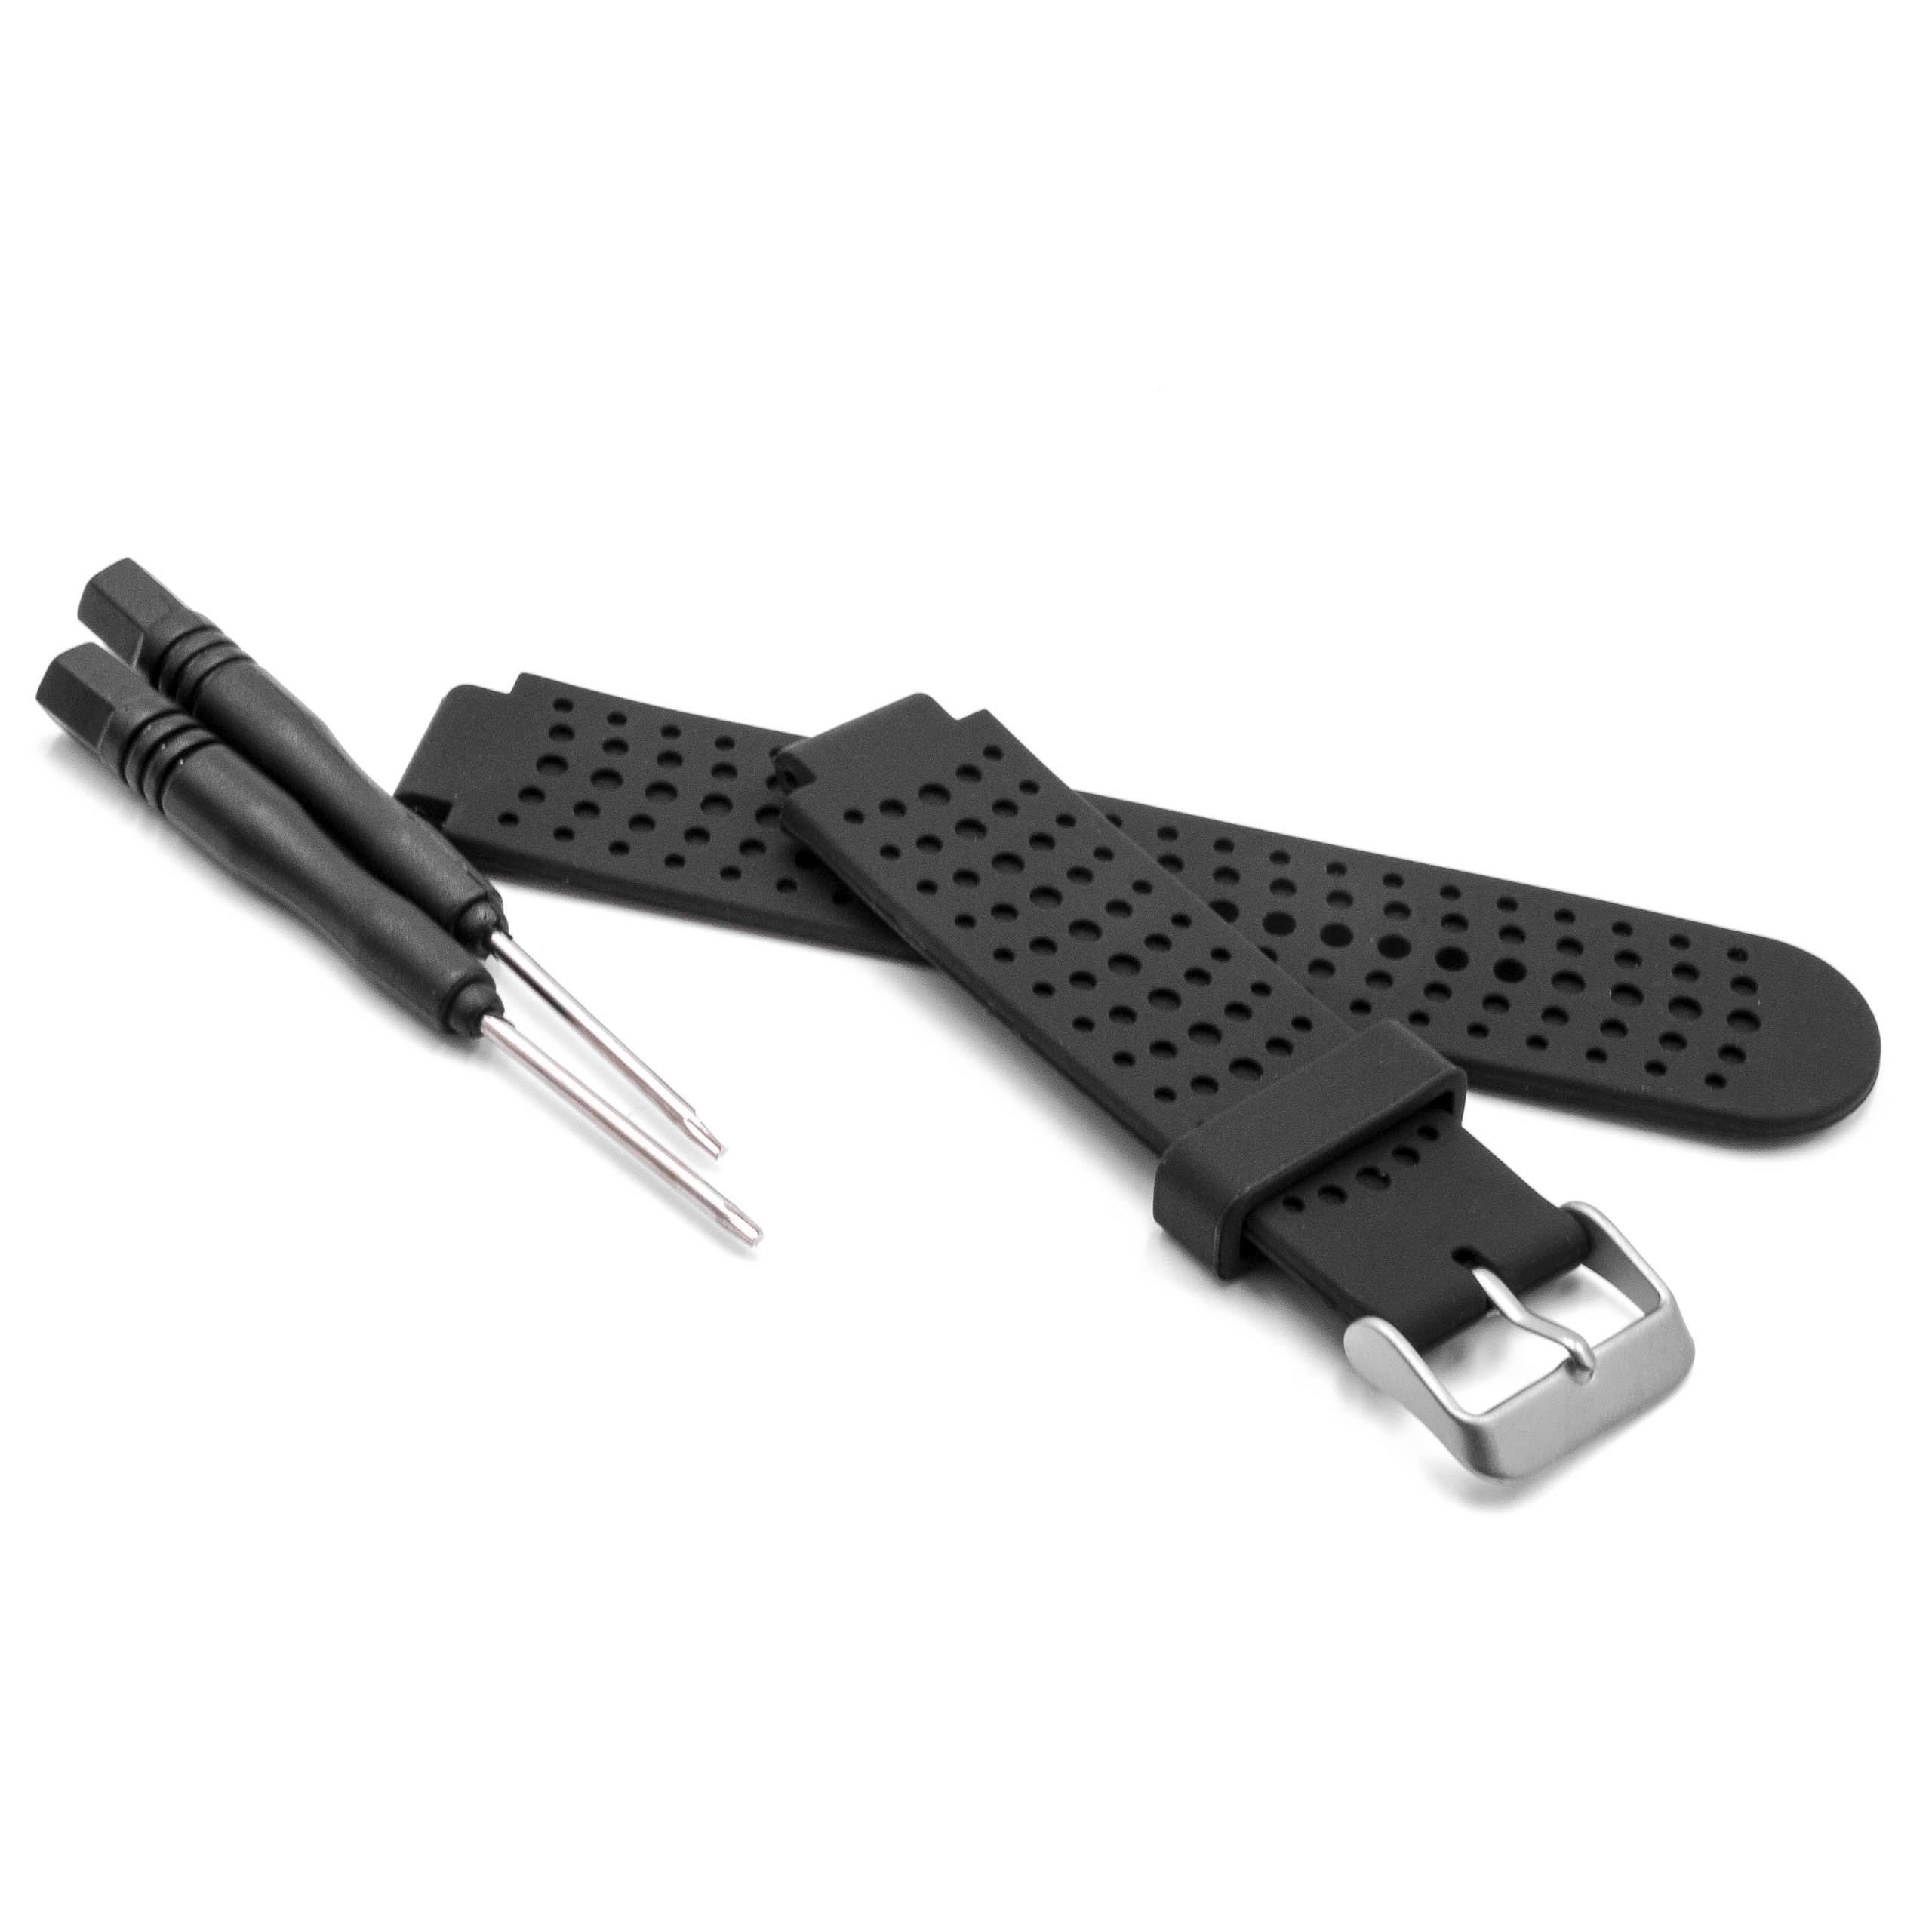 Armband L Männer für Garmin Forerunner Smartwatch - 12,3cm + 9 cm lang, 22mm breit, Silikon, schwarz